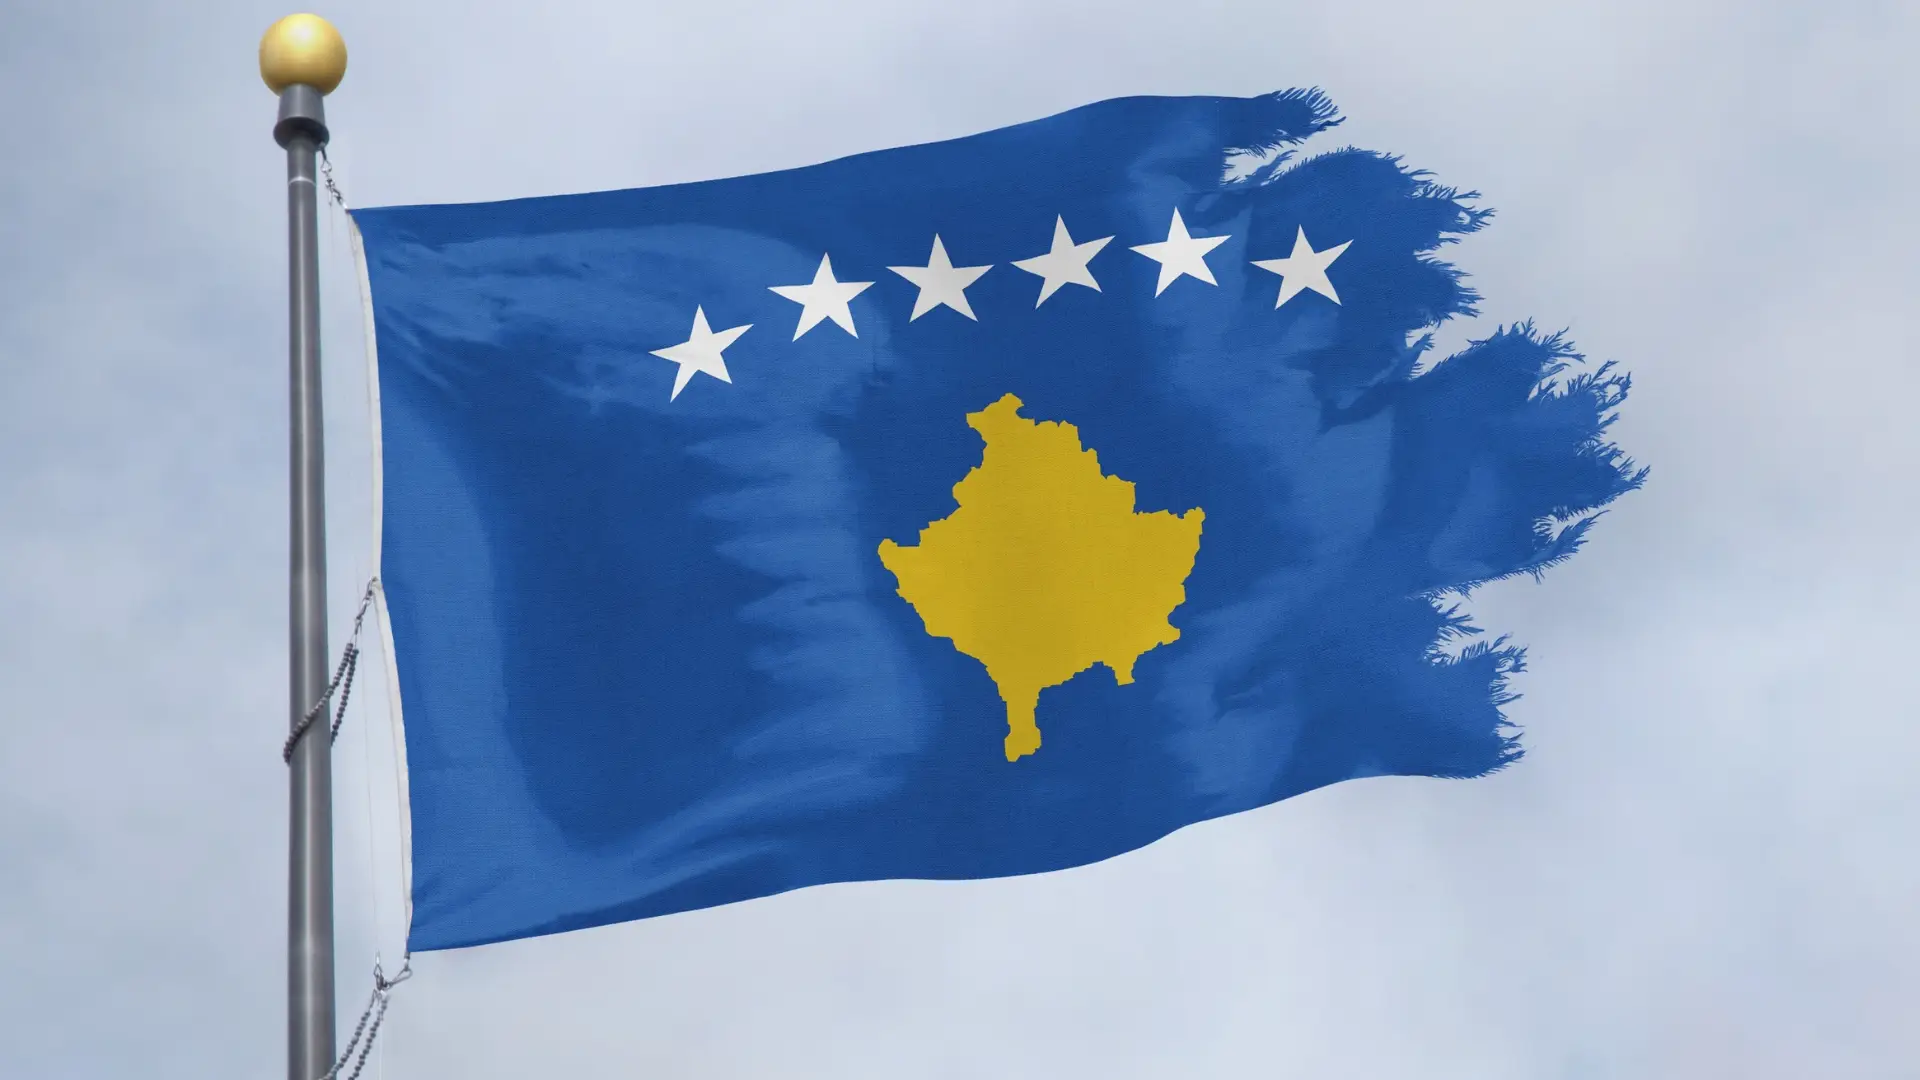 Nomeação de ministro sérvio no Kosovo considerada ilegal por Belgrado